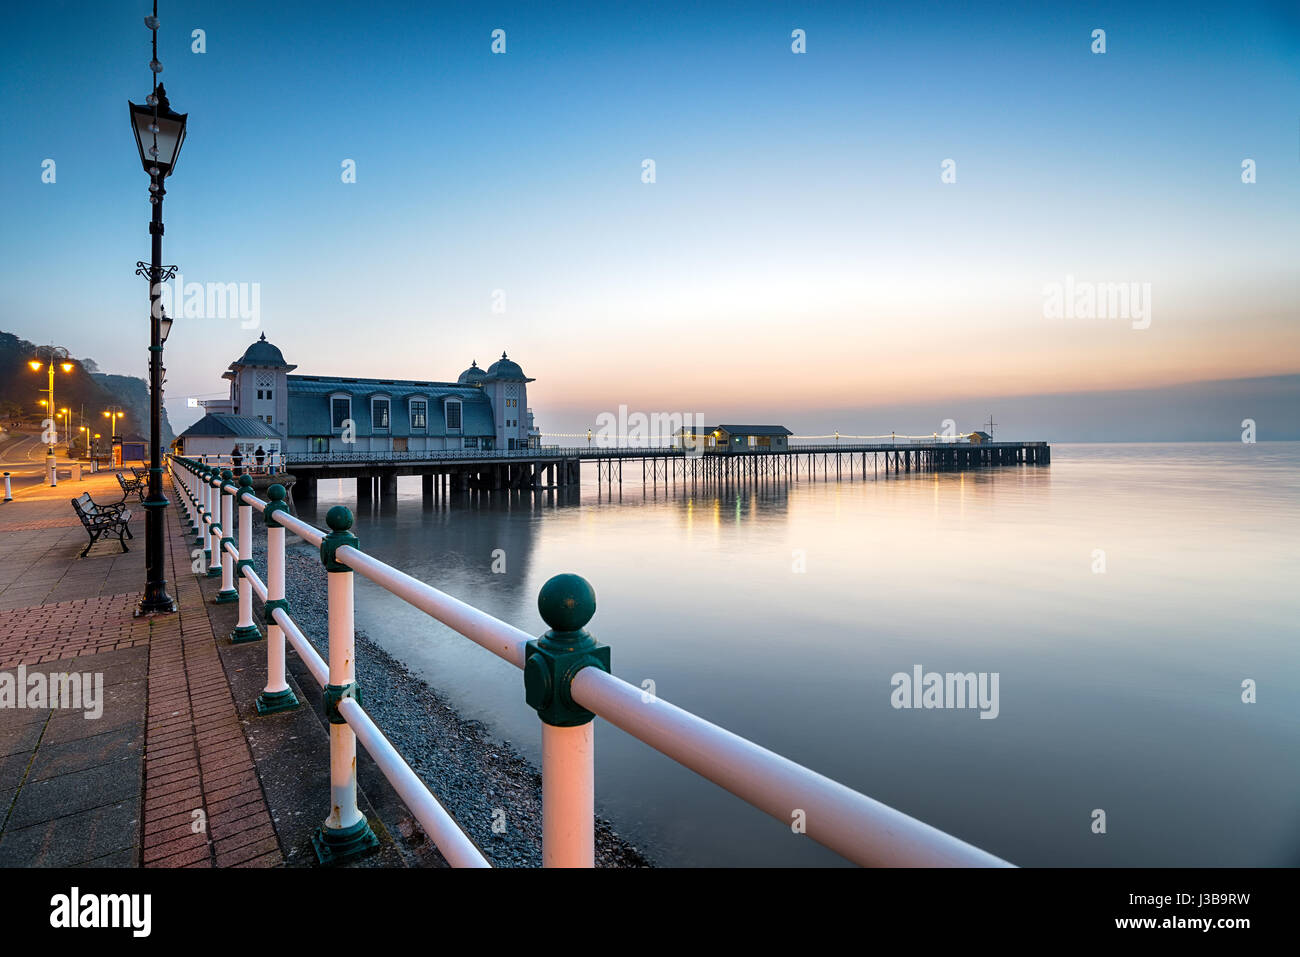 Justo antes del amanecer en Penarth Pier cerca de Cardiff, en la costa sur de Gales Foto de stock